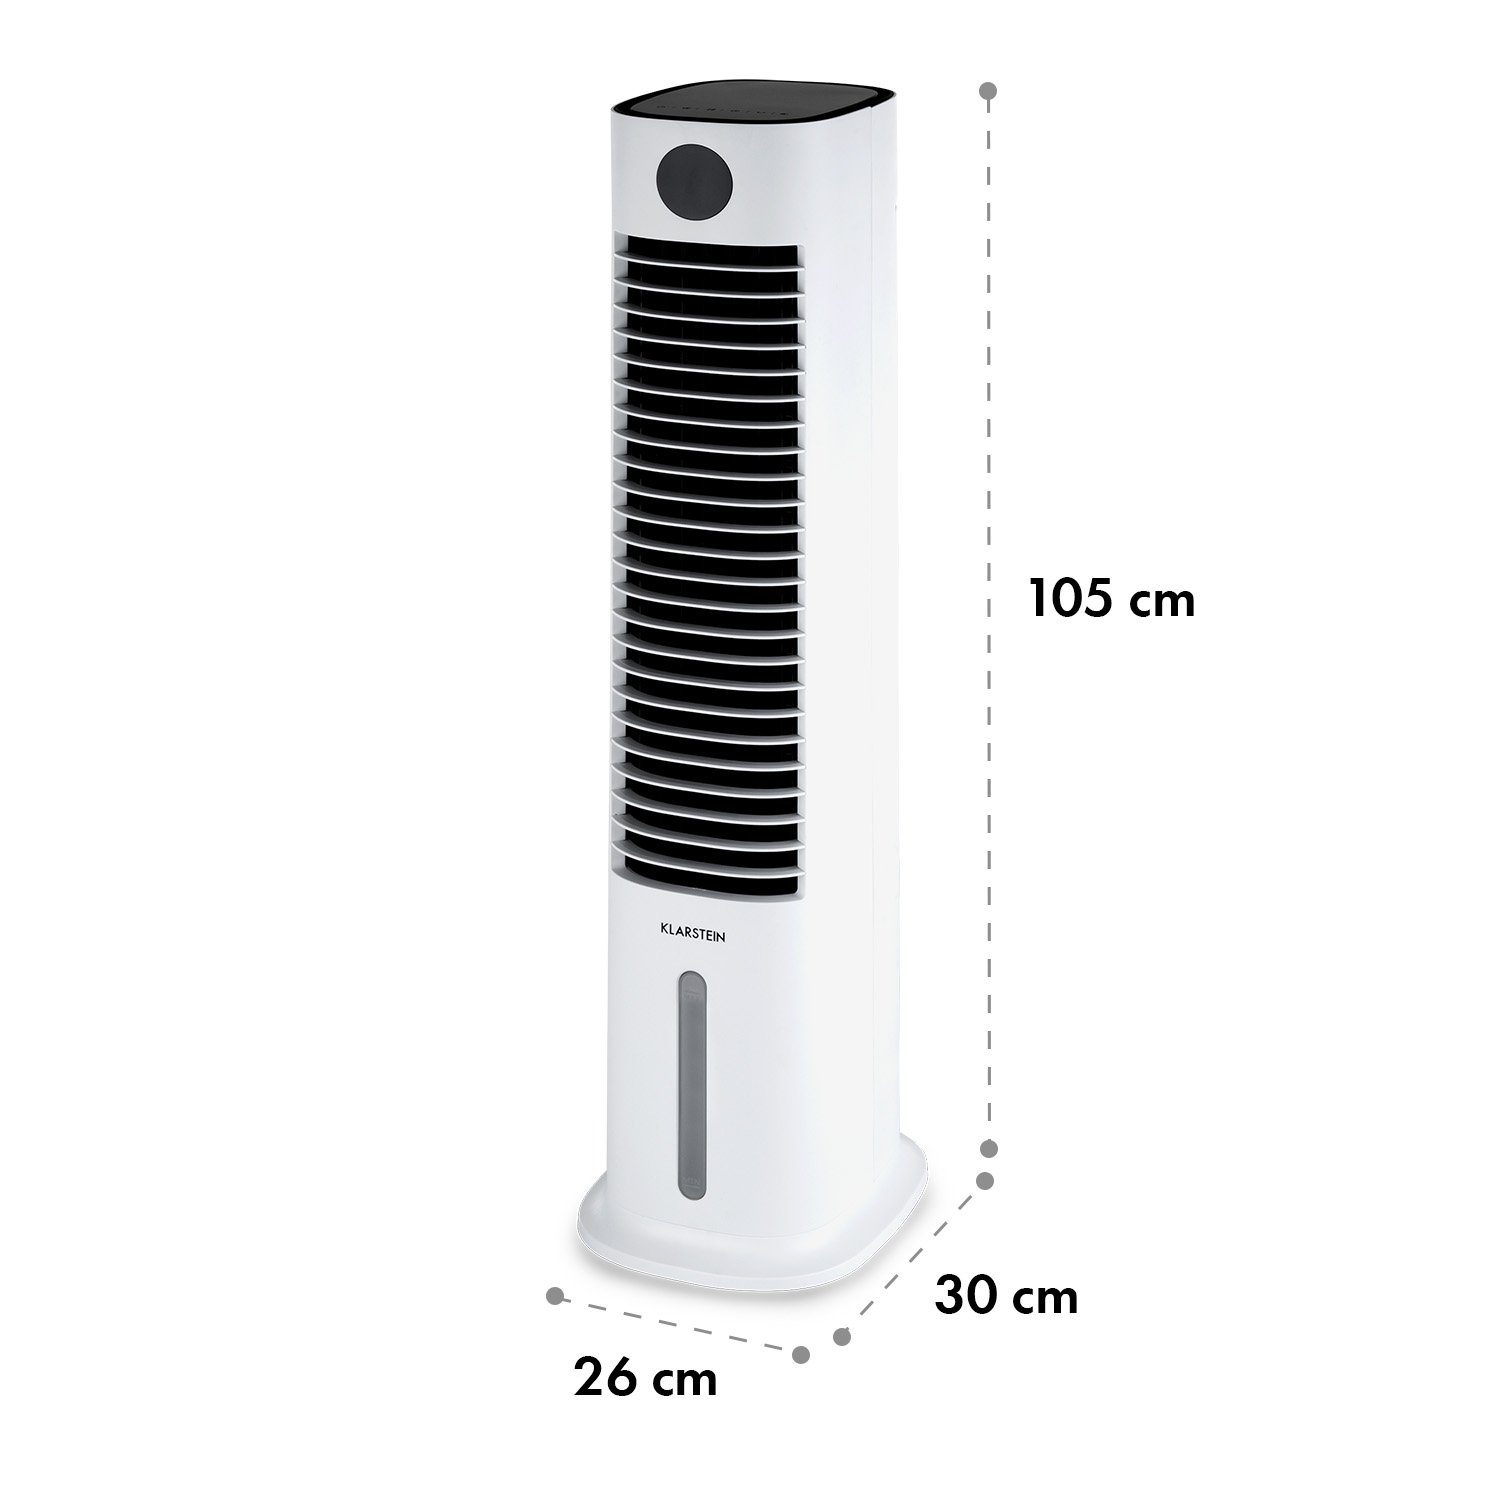 Klarstein Luftkühler, Wasserkühlung Eis Ventilatorkombigerät mobil Skytower Abluftschlauch Grand & mit Smart ohne Klimagerät